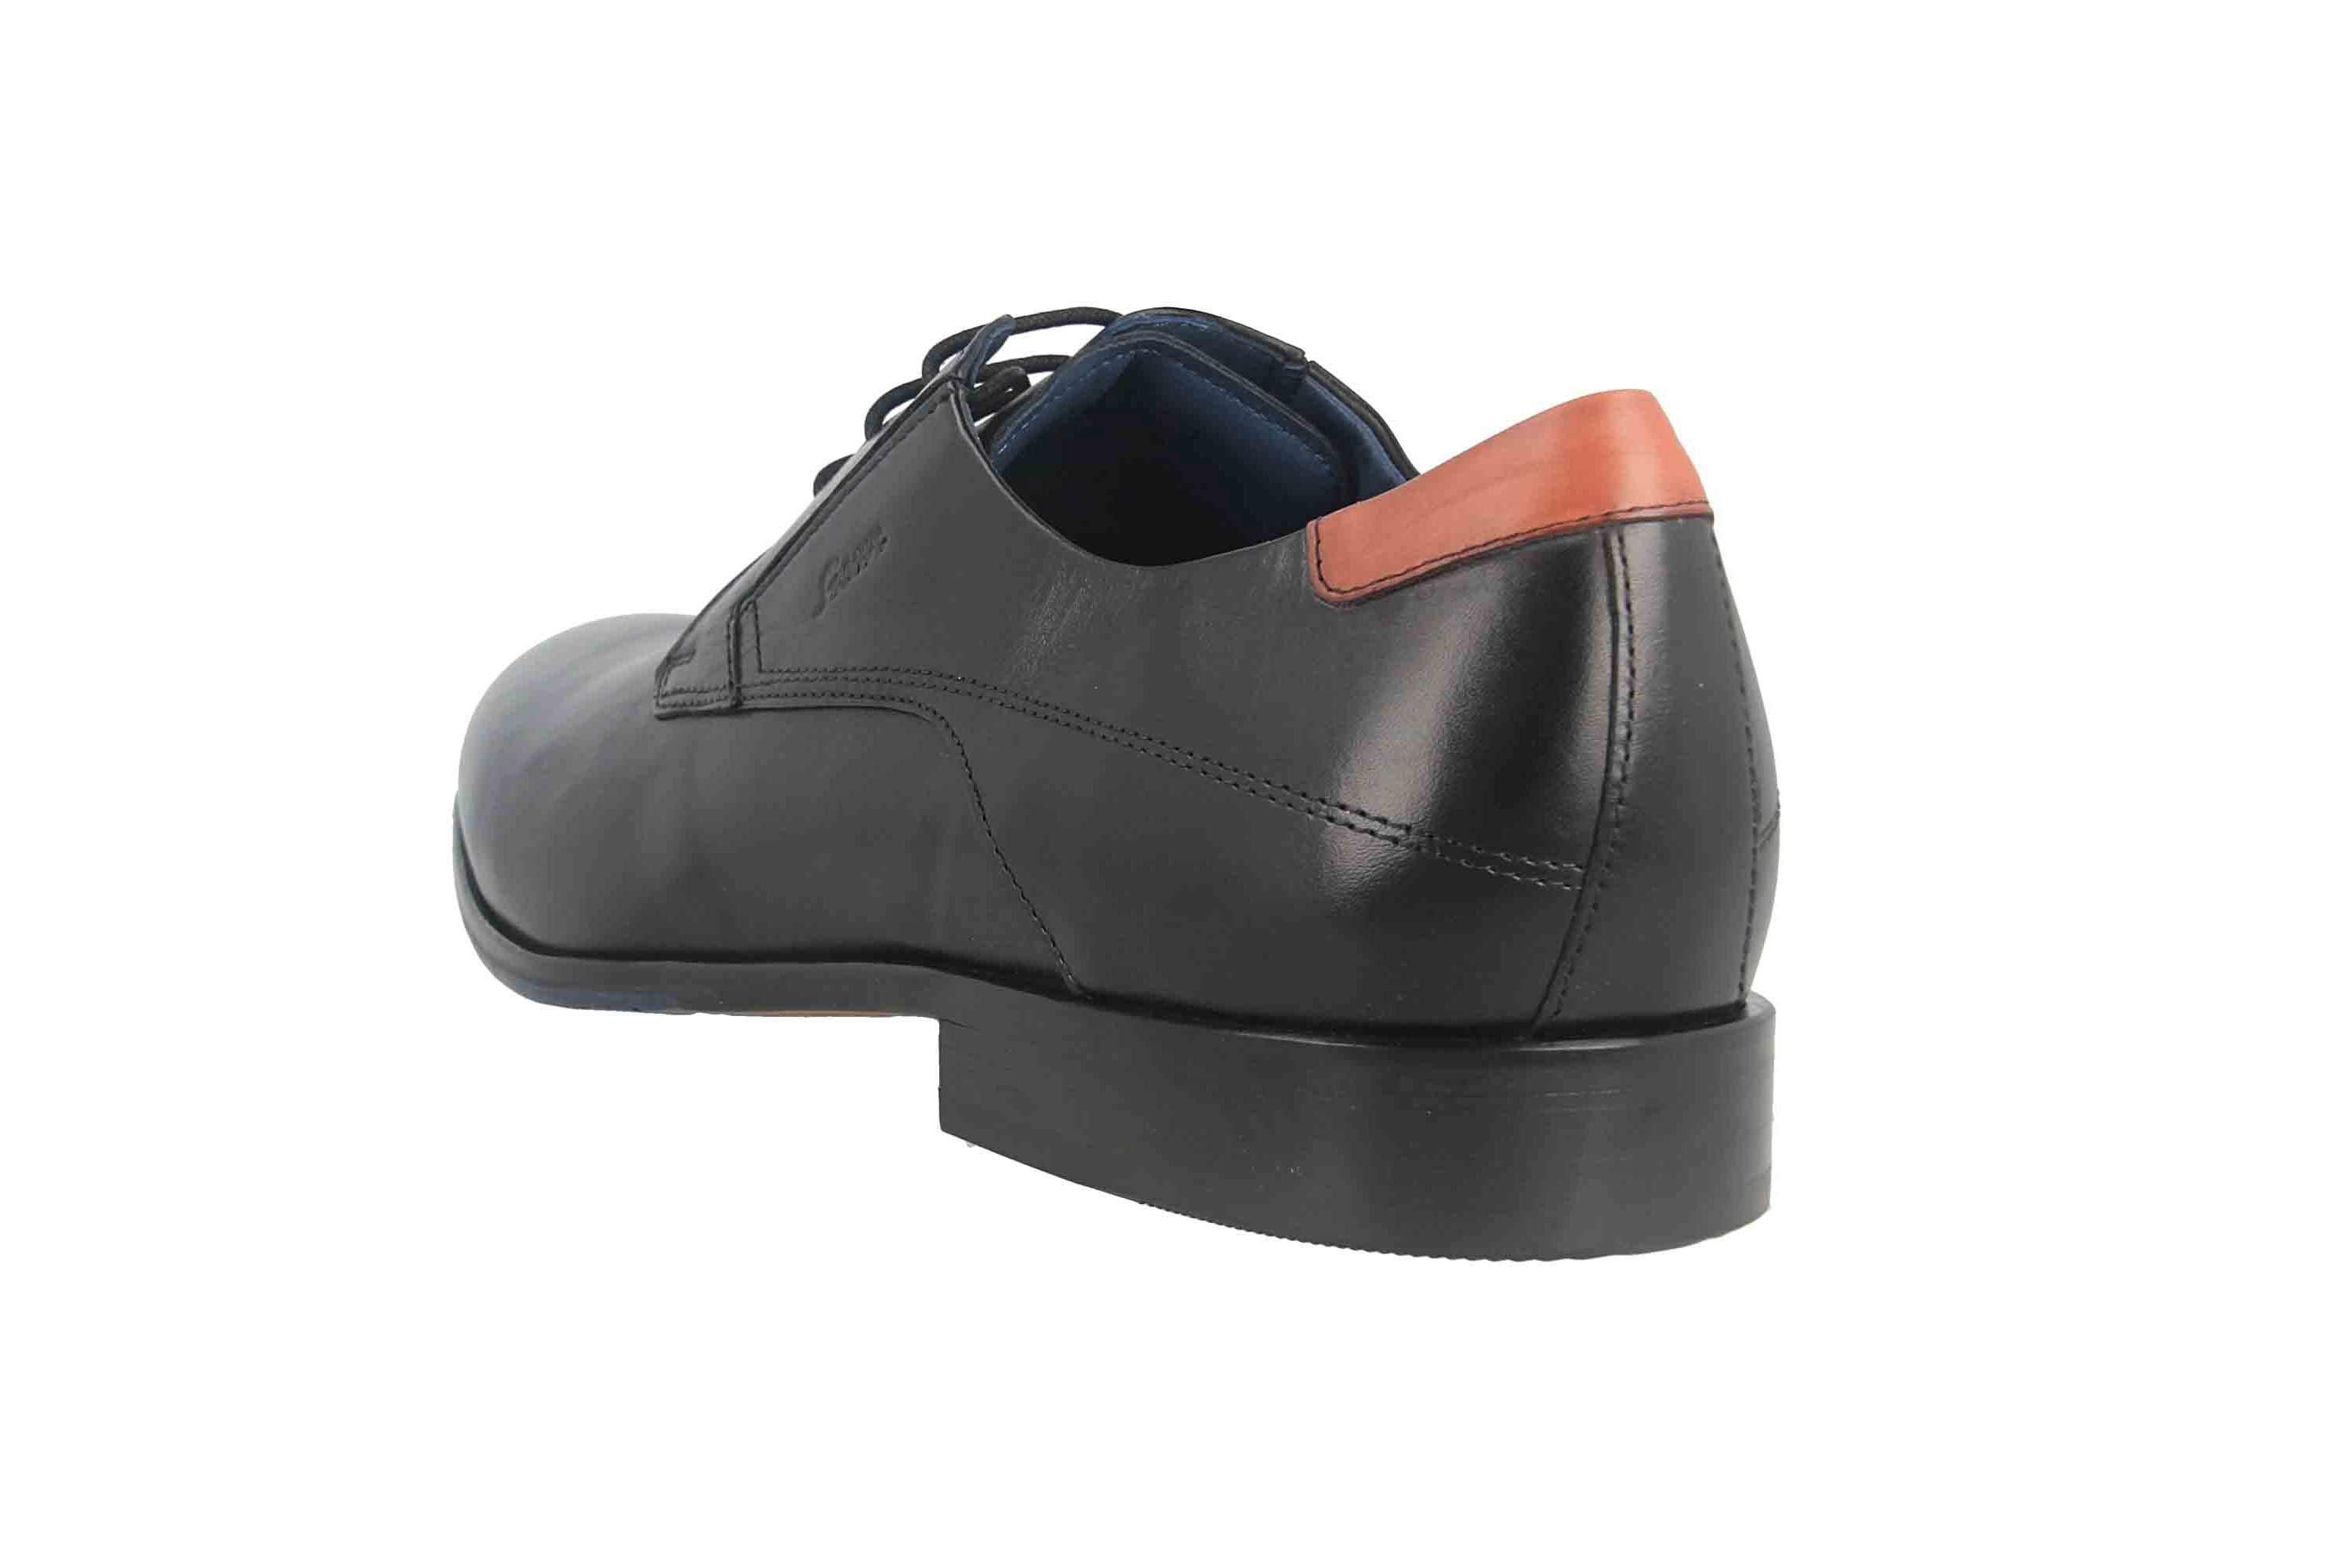 Schuhe Halbschuhe SIOUX JAROMIR-703 Businessschuhe in Übergrößen Schnürschuh